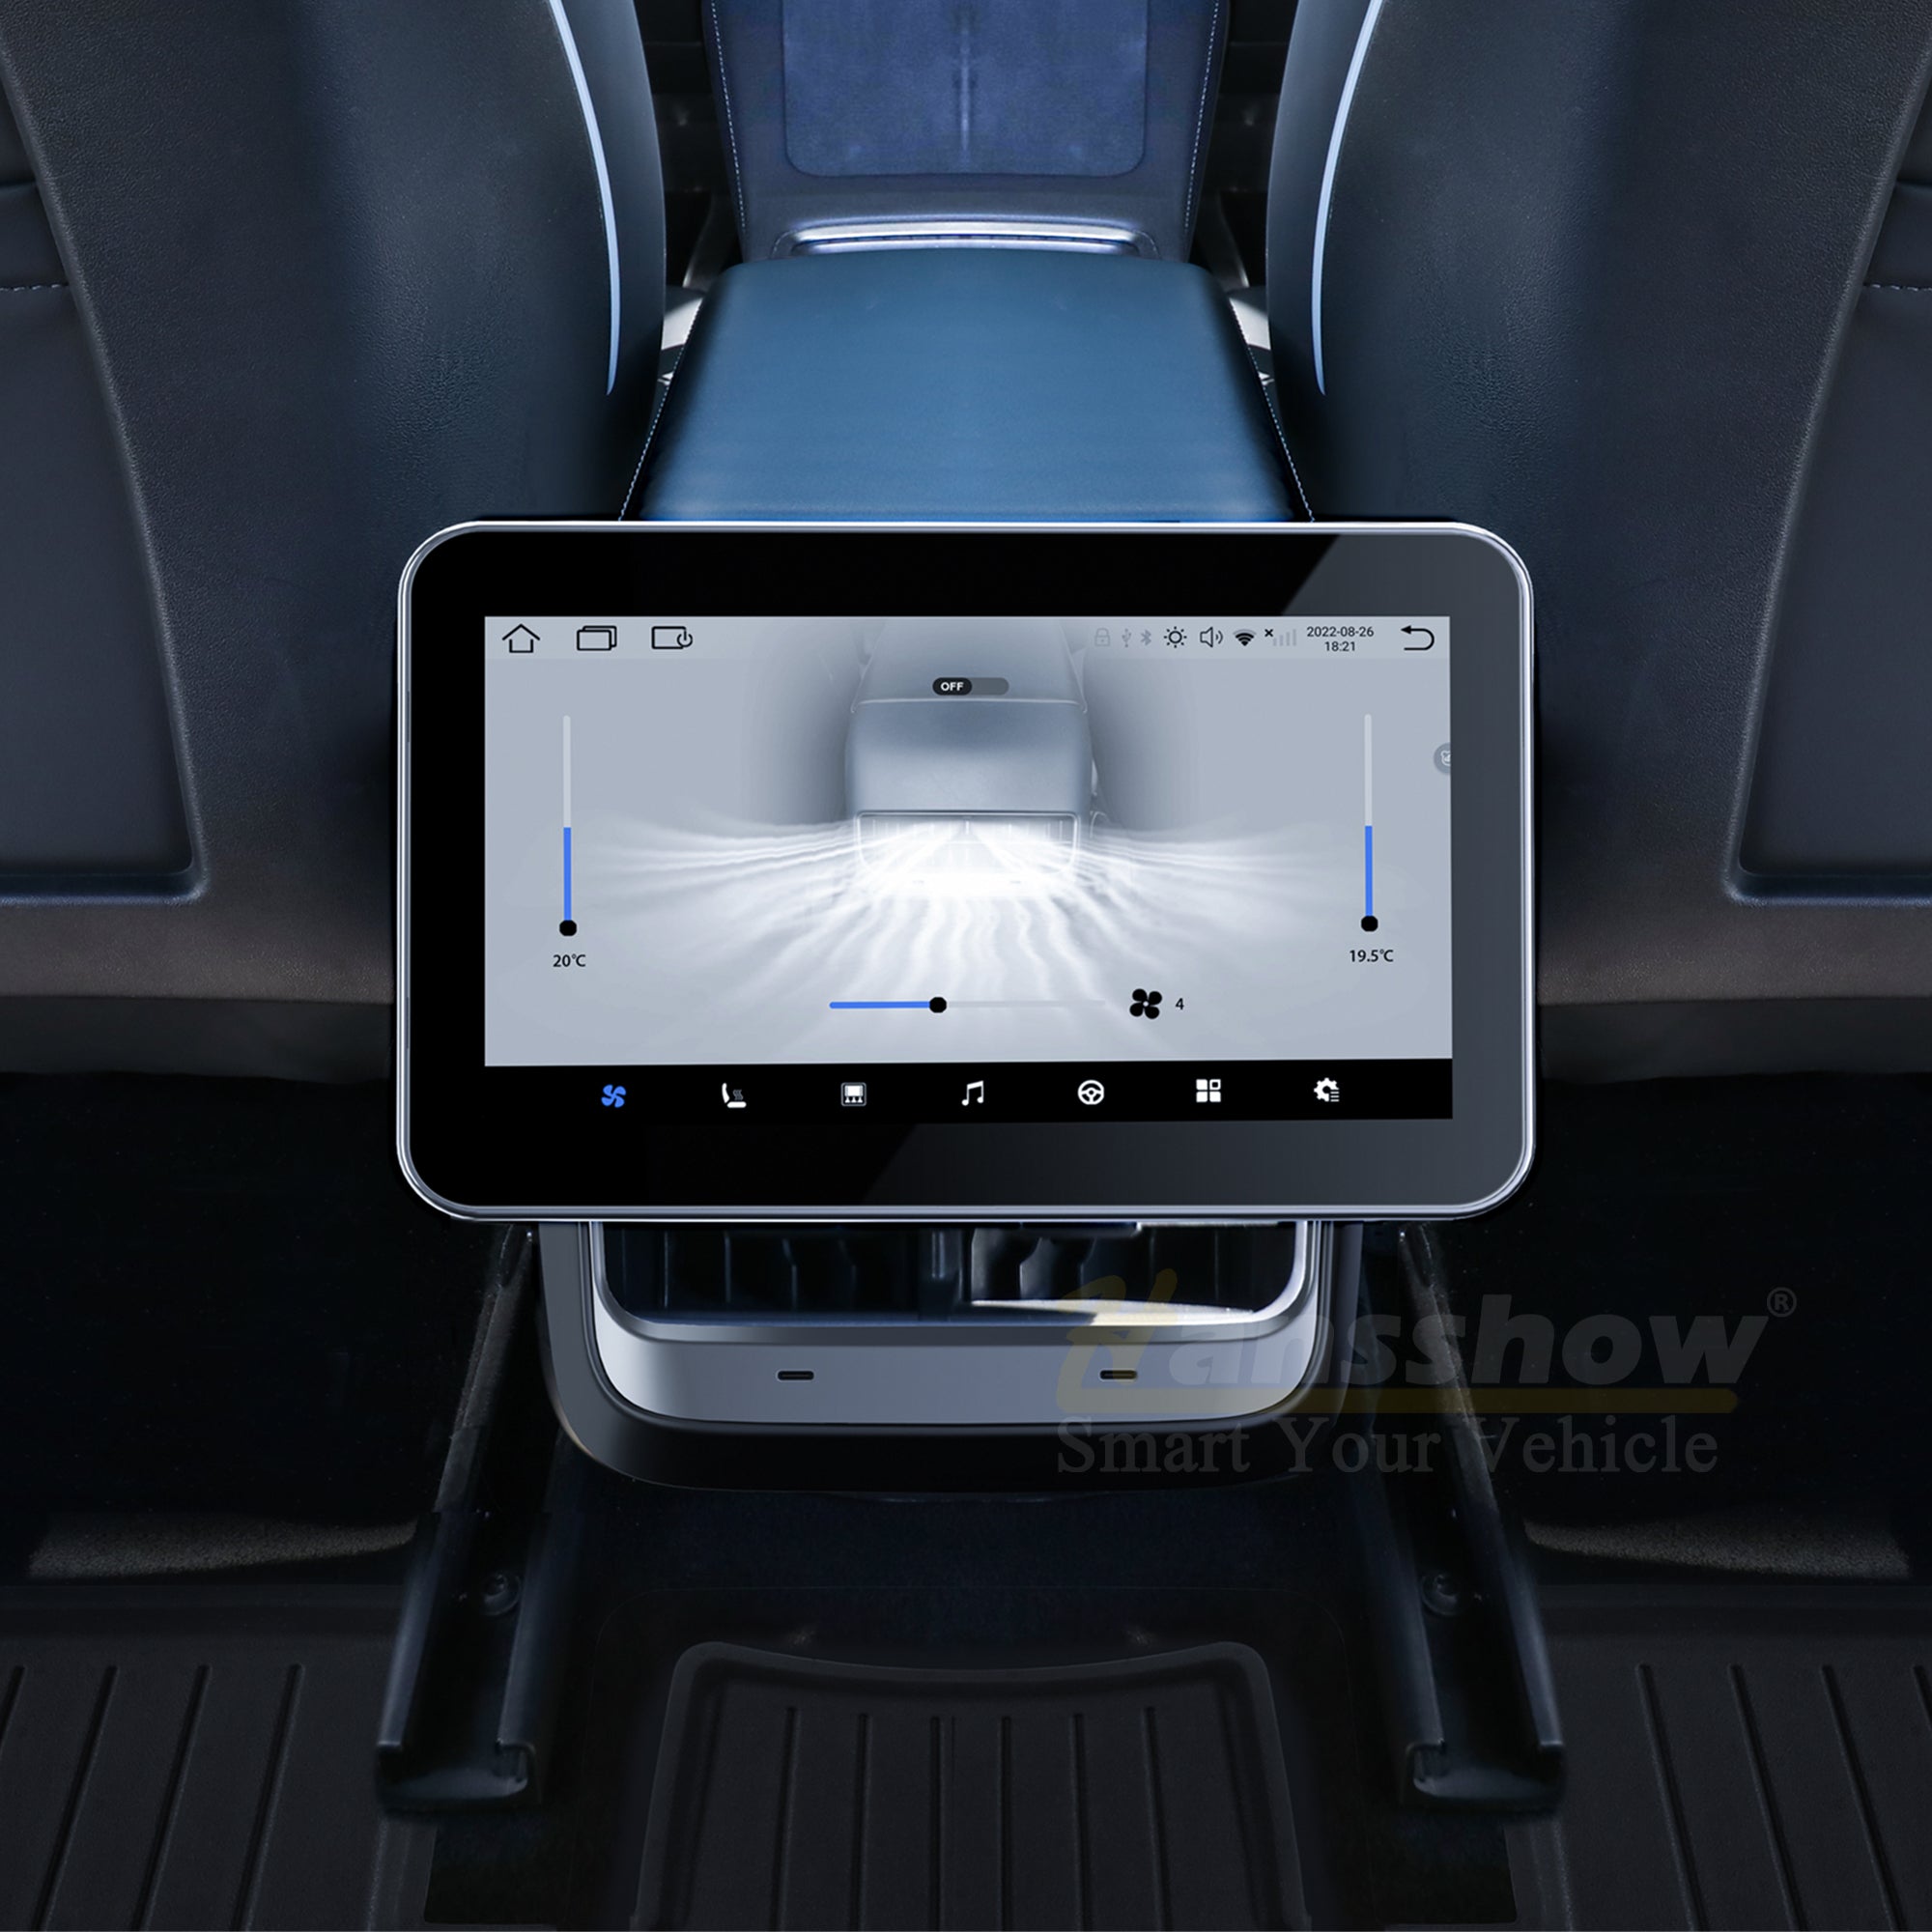 Modell 3/Y 8,2-Zoll-Touchscreen für Unterhaltung und Klimaanlage im Fond